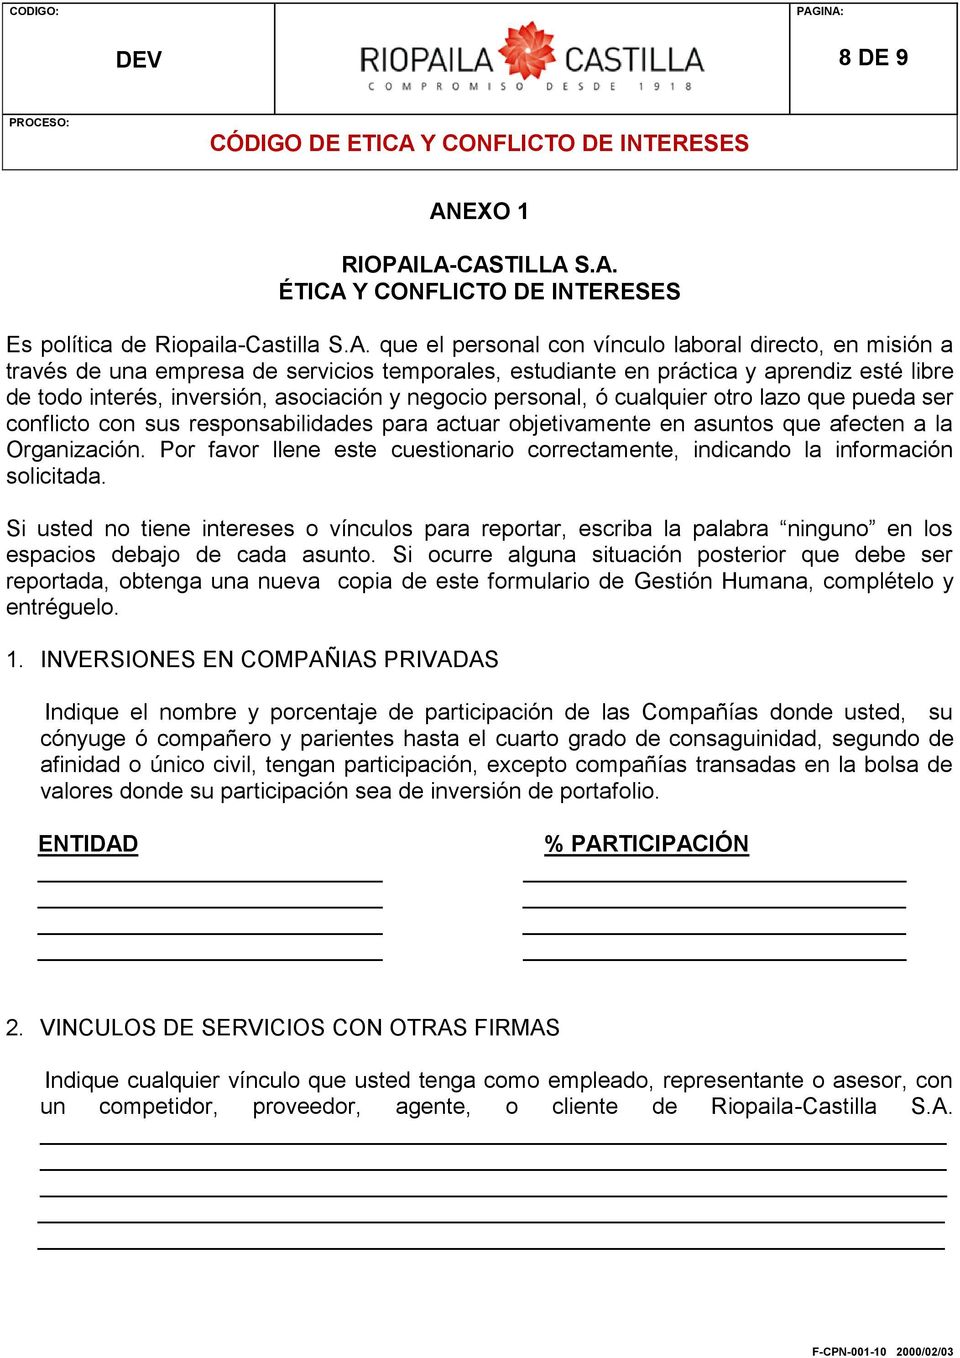 LA-CASTILLA S.A. ÉTICA Y CONFLICTO DE INTERESES Es política de Riopaila-Castilla S.A. que el personal con vínculo laboral directo, en misión a través de una empresa de servicios temporales,